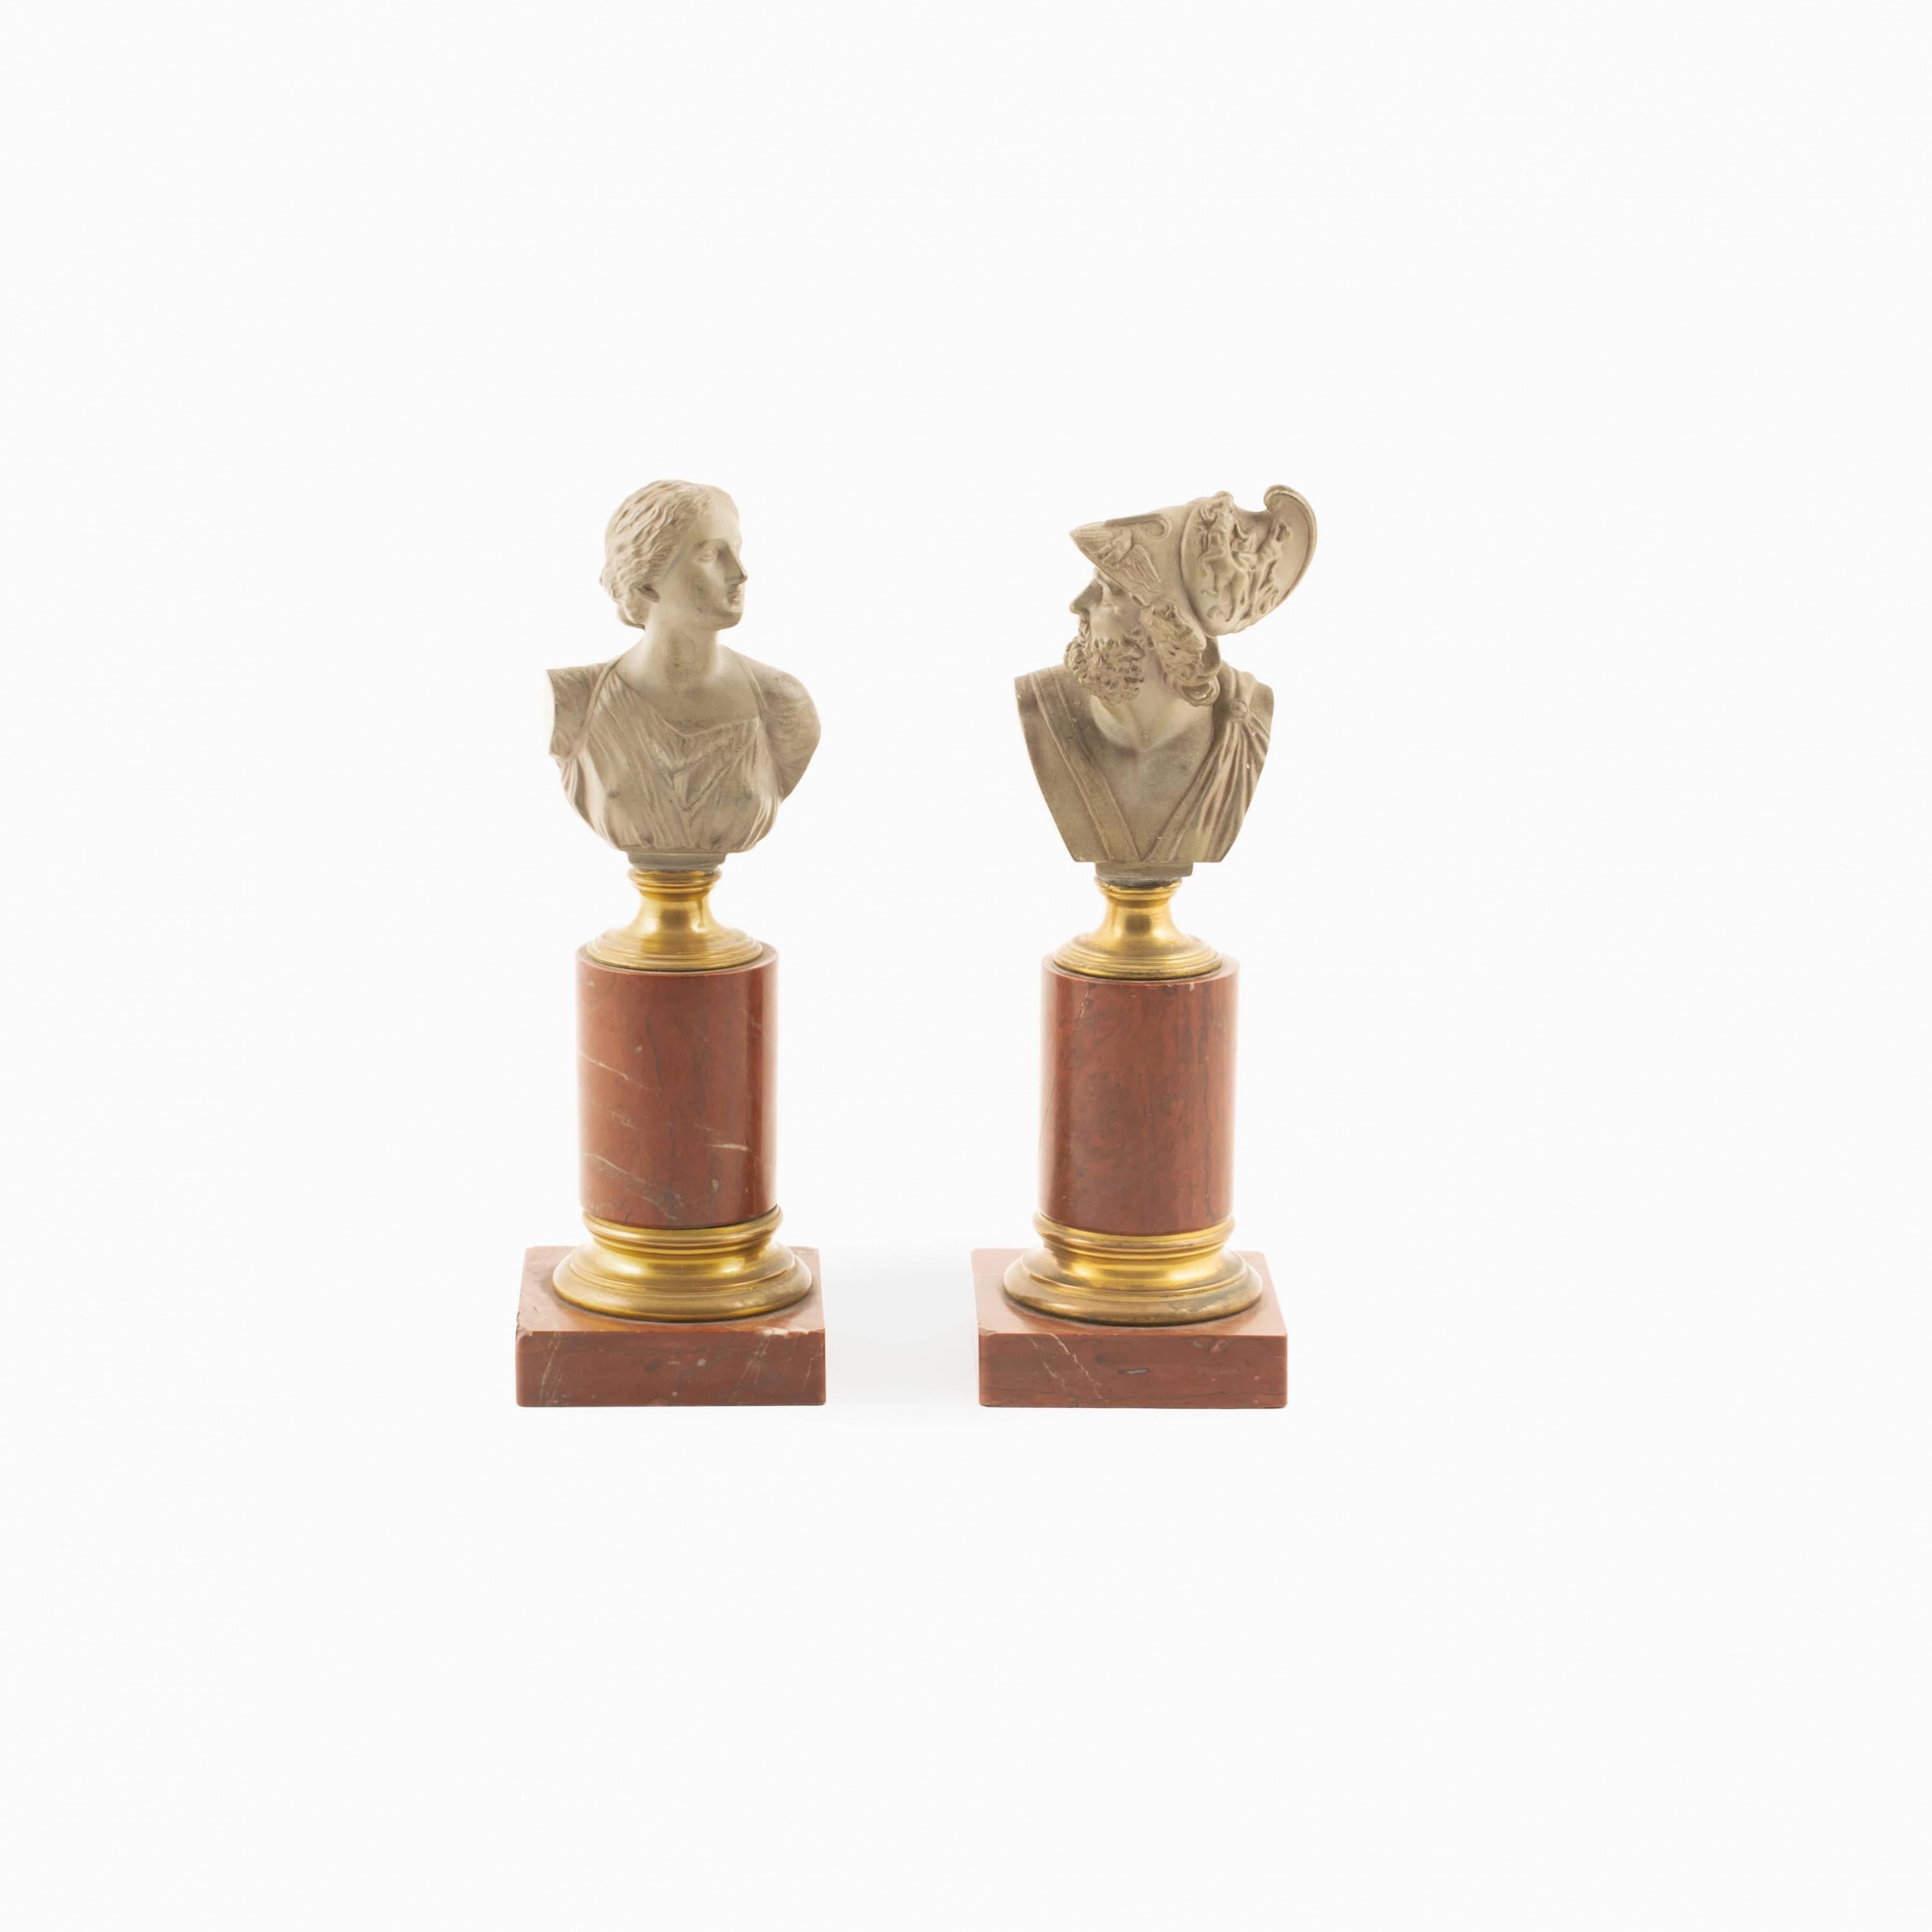 German Pair of Classical Greek Figures Busts, Menelaos & Helena